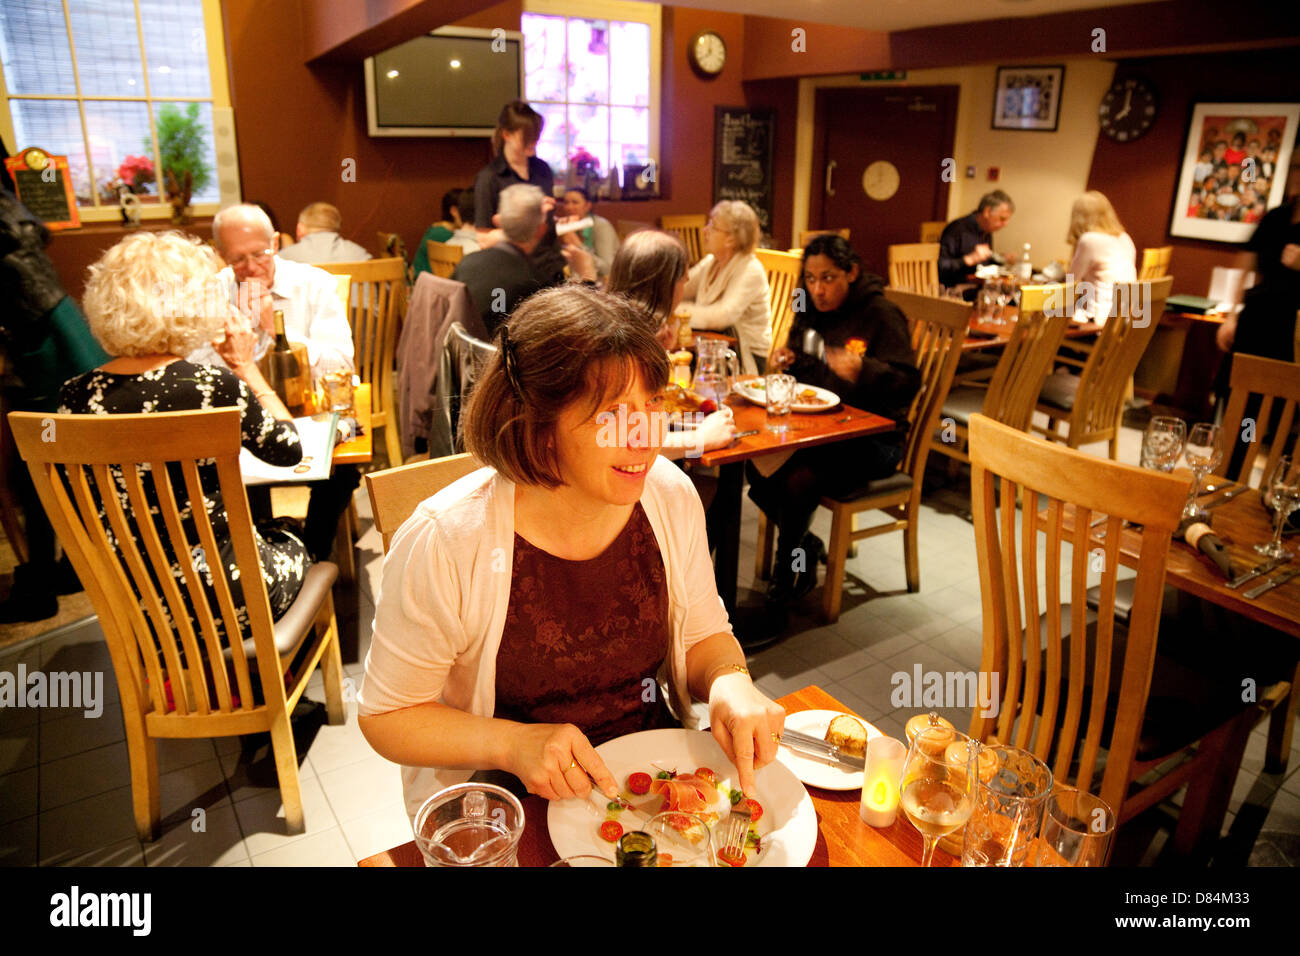 Eine Frau essen ihr Abendessen, Innenausbau von Ate Uhr Restaurant, York, Yorkshire UK Stockfoto